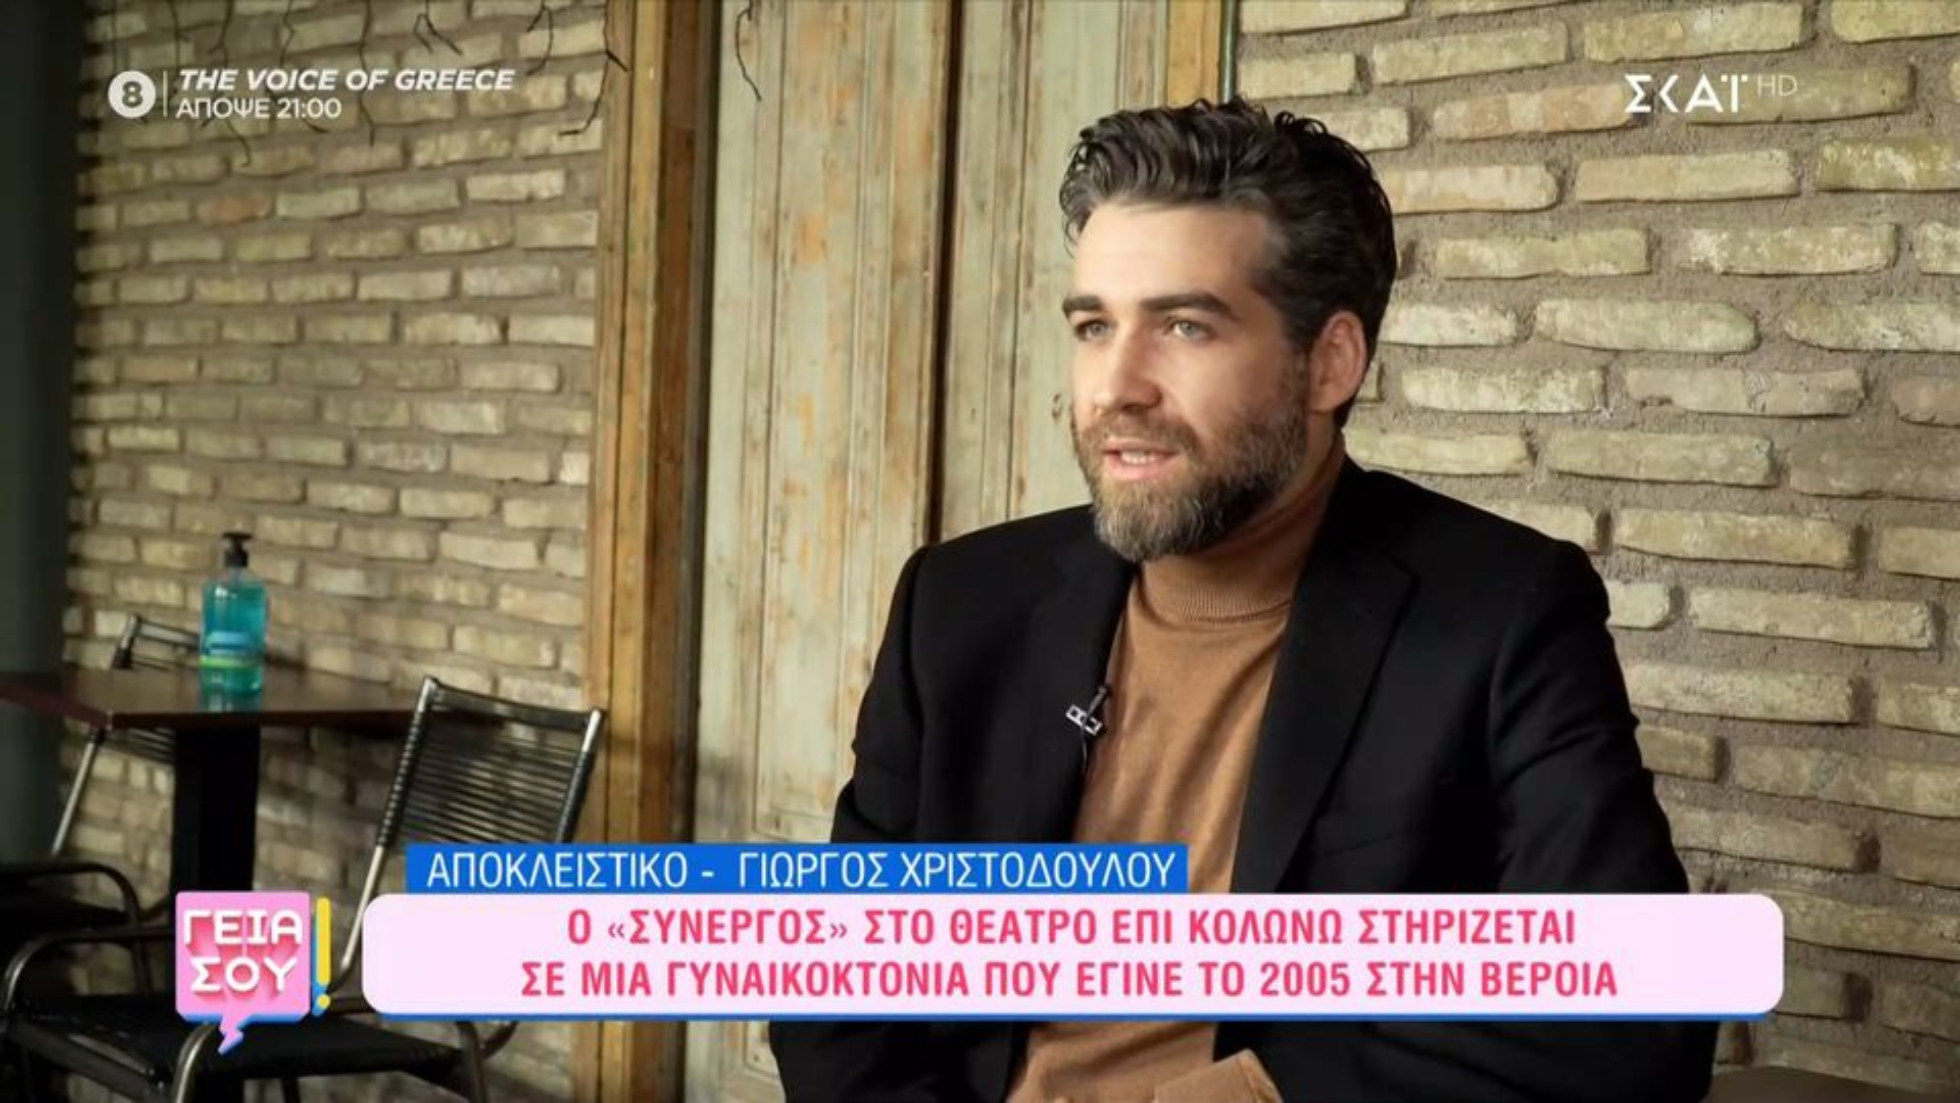 Γιώργoς Χριστοδούλου: «Μου έγραψε τράβα στο χωριό σου βρε παλιομαλ@@α» (VIDEO)